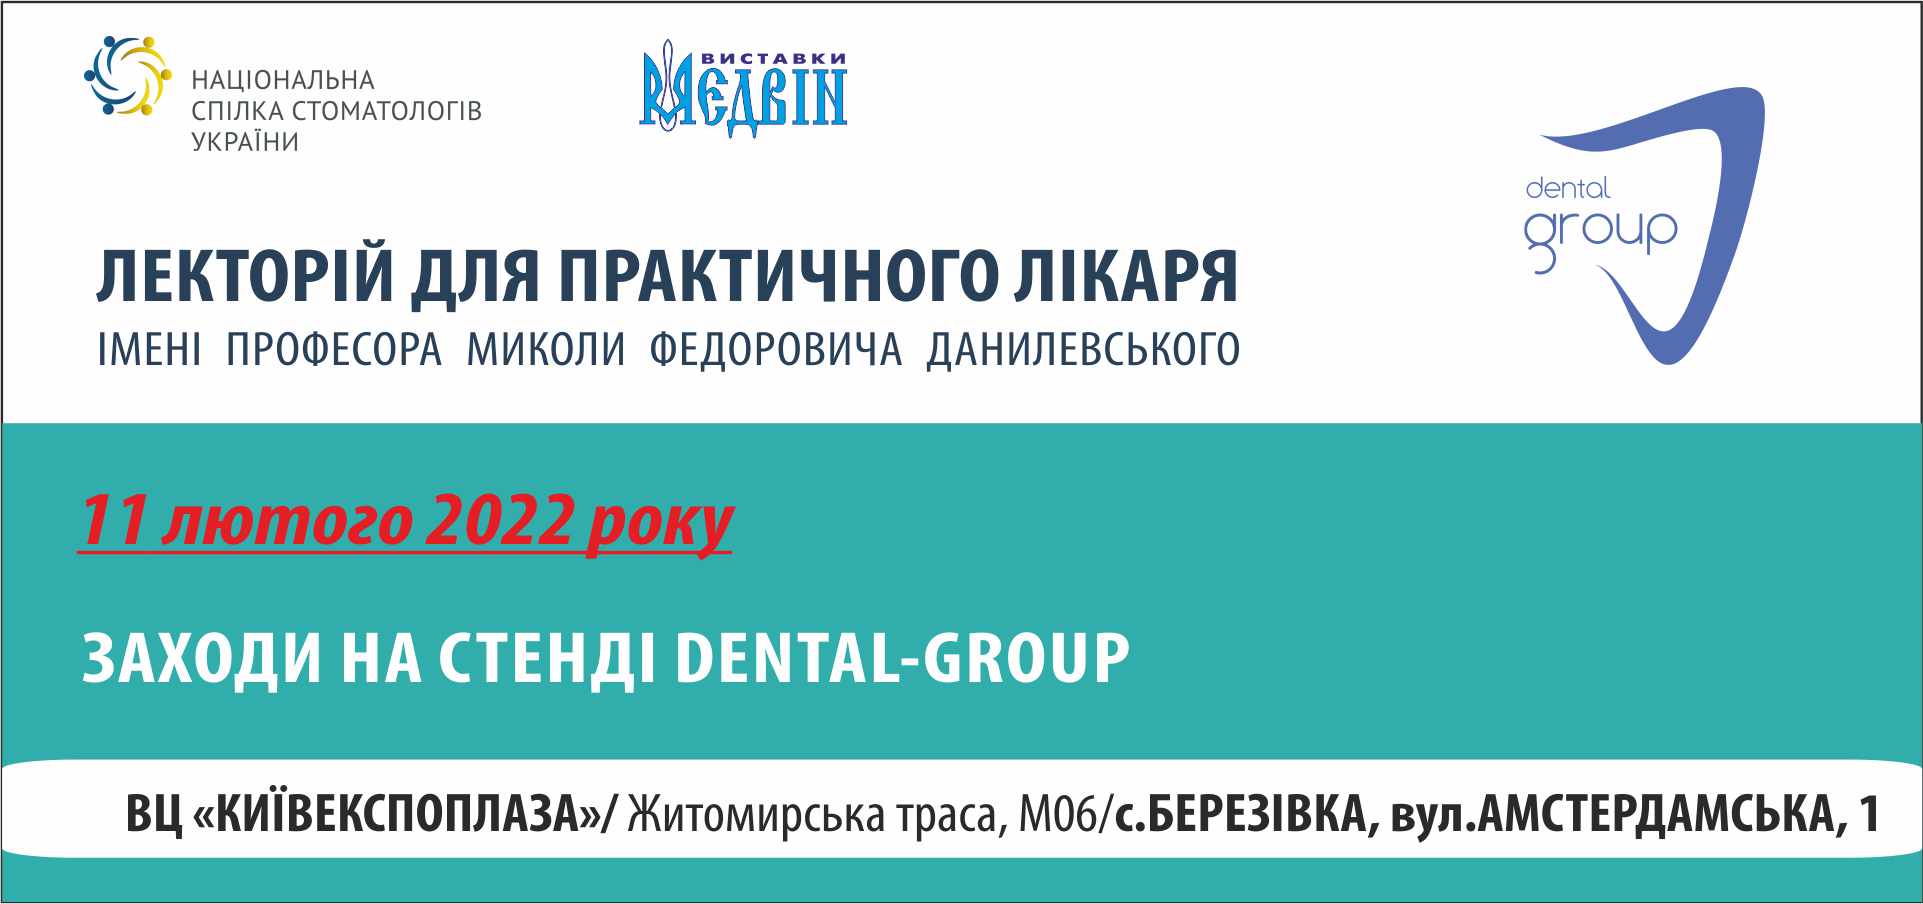 Заходи на стенді Dental-Group